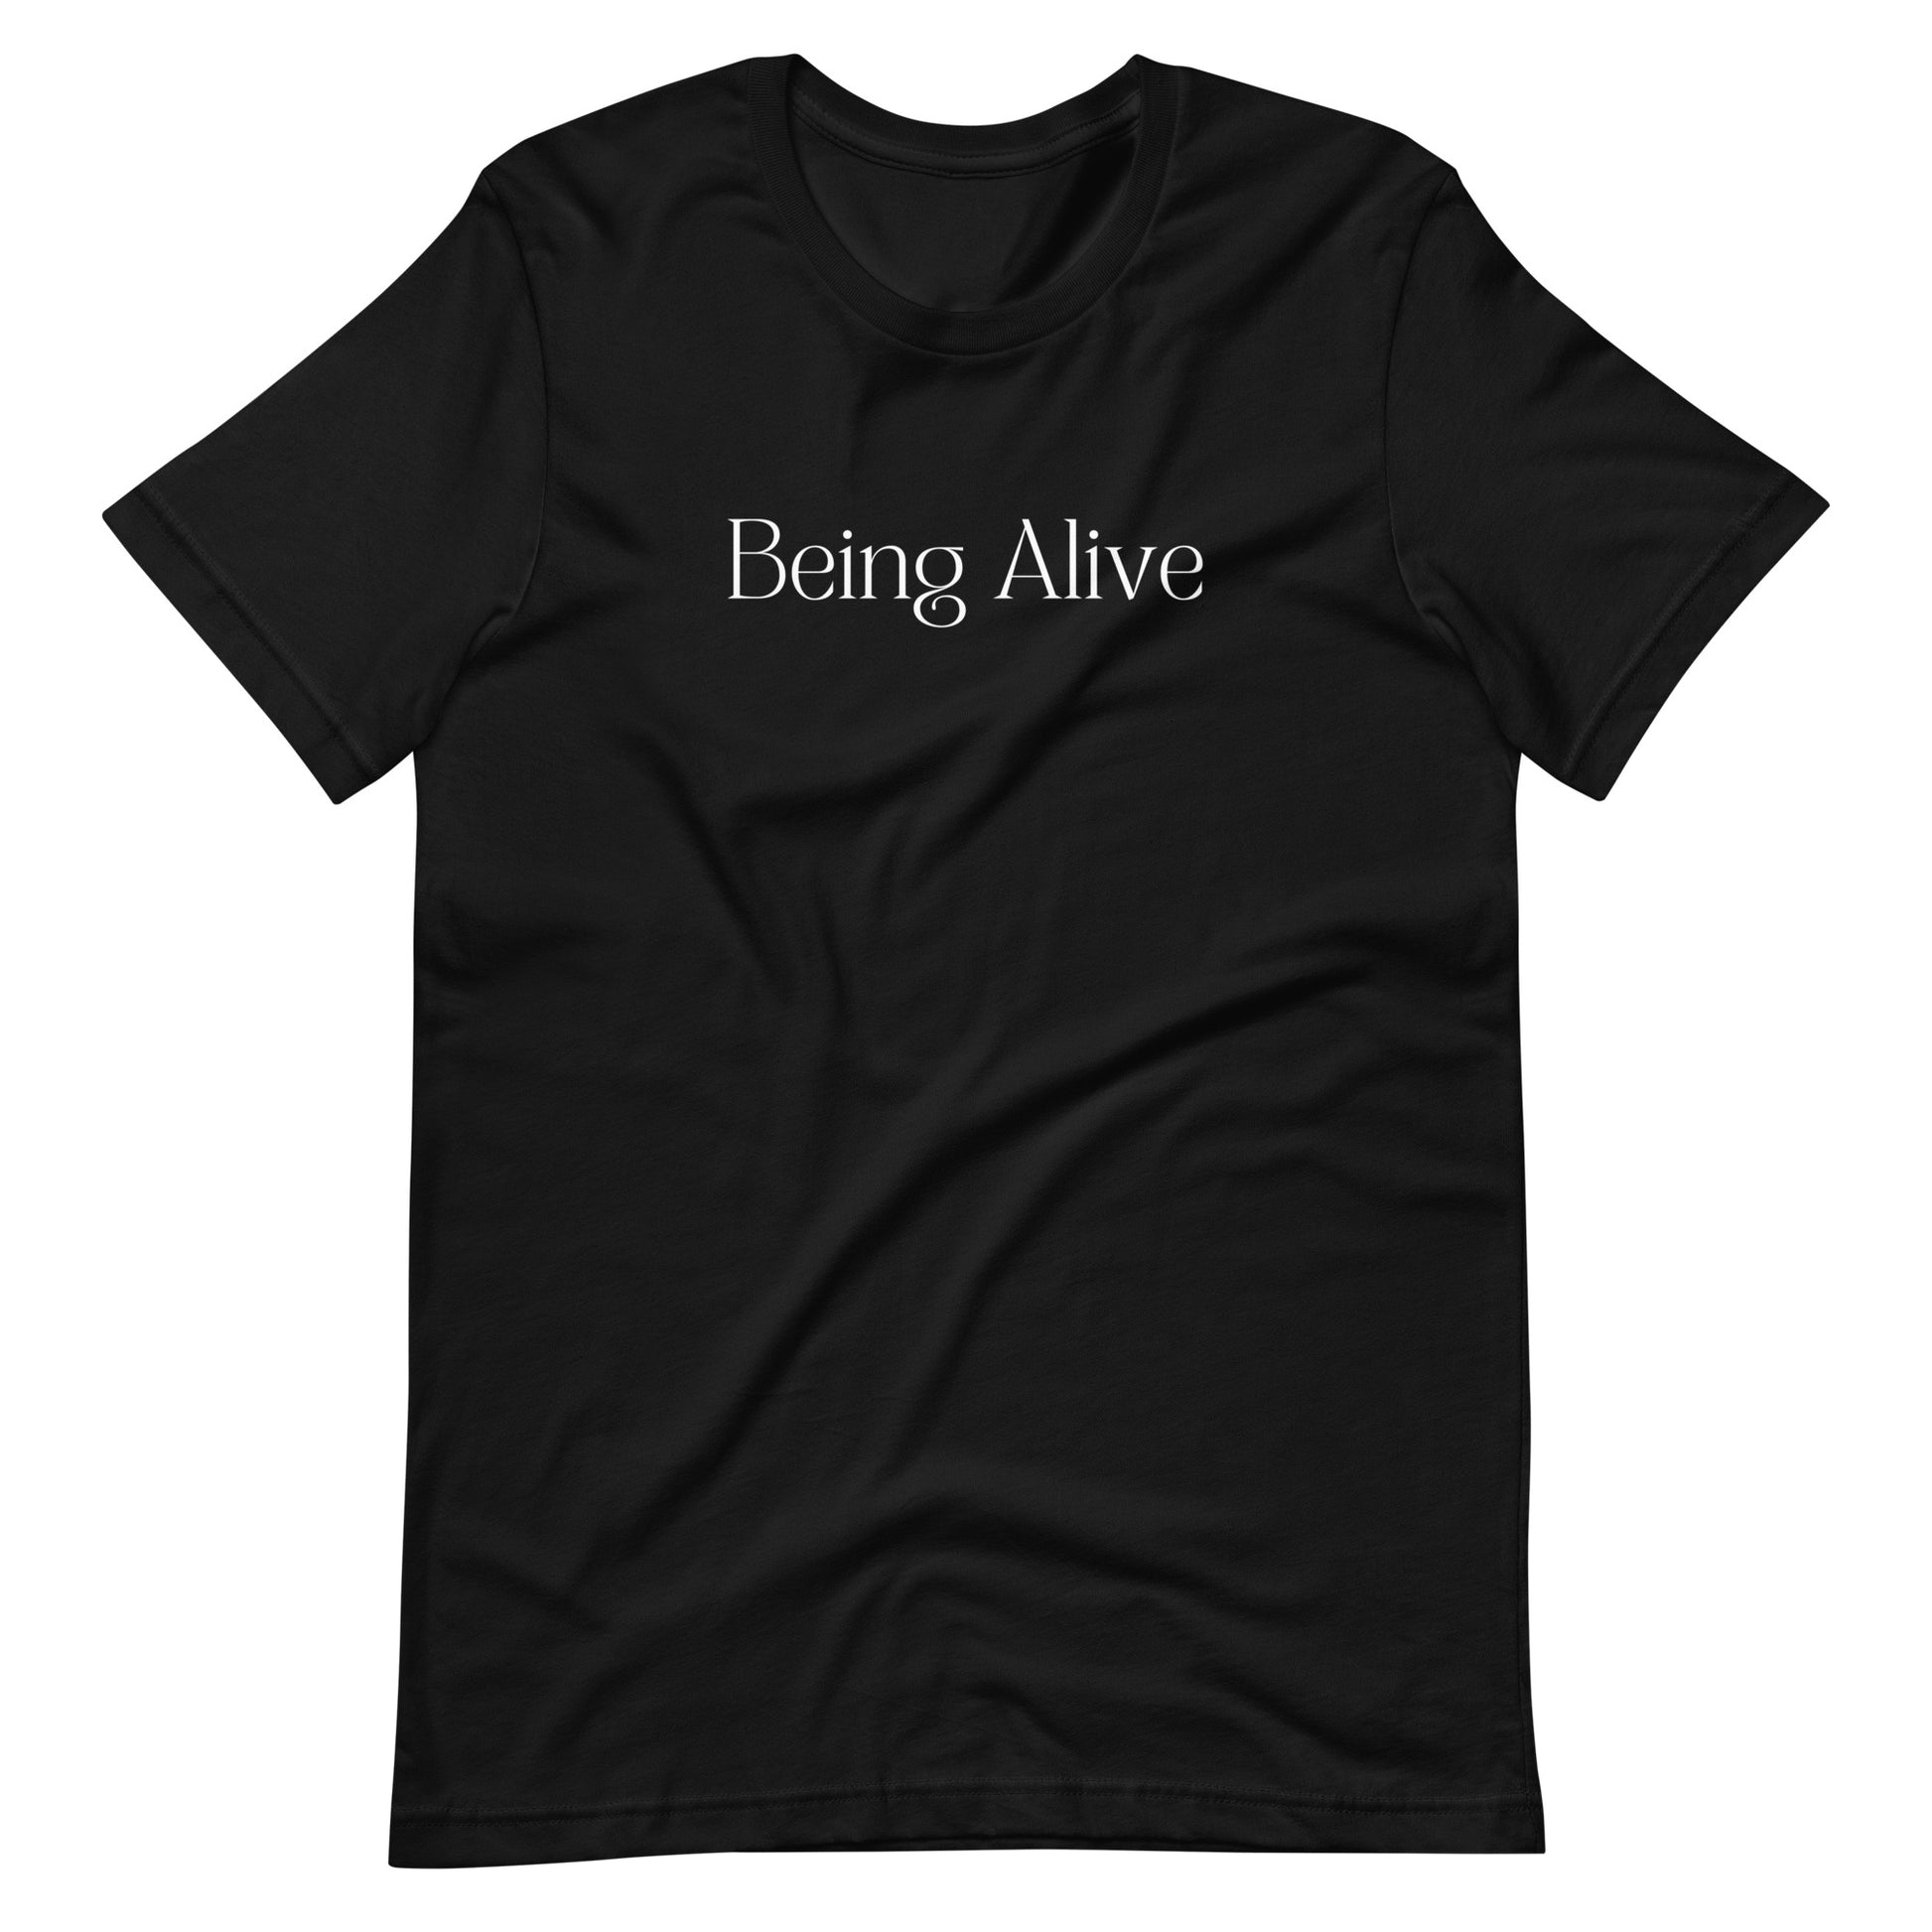 Being Alive - Designed by Zeeshan Waheed - izeeshanwaheed